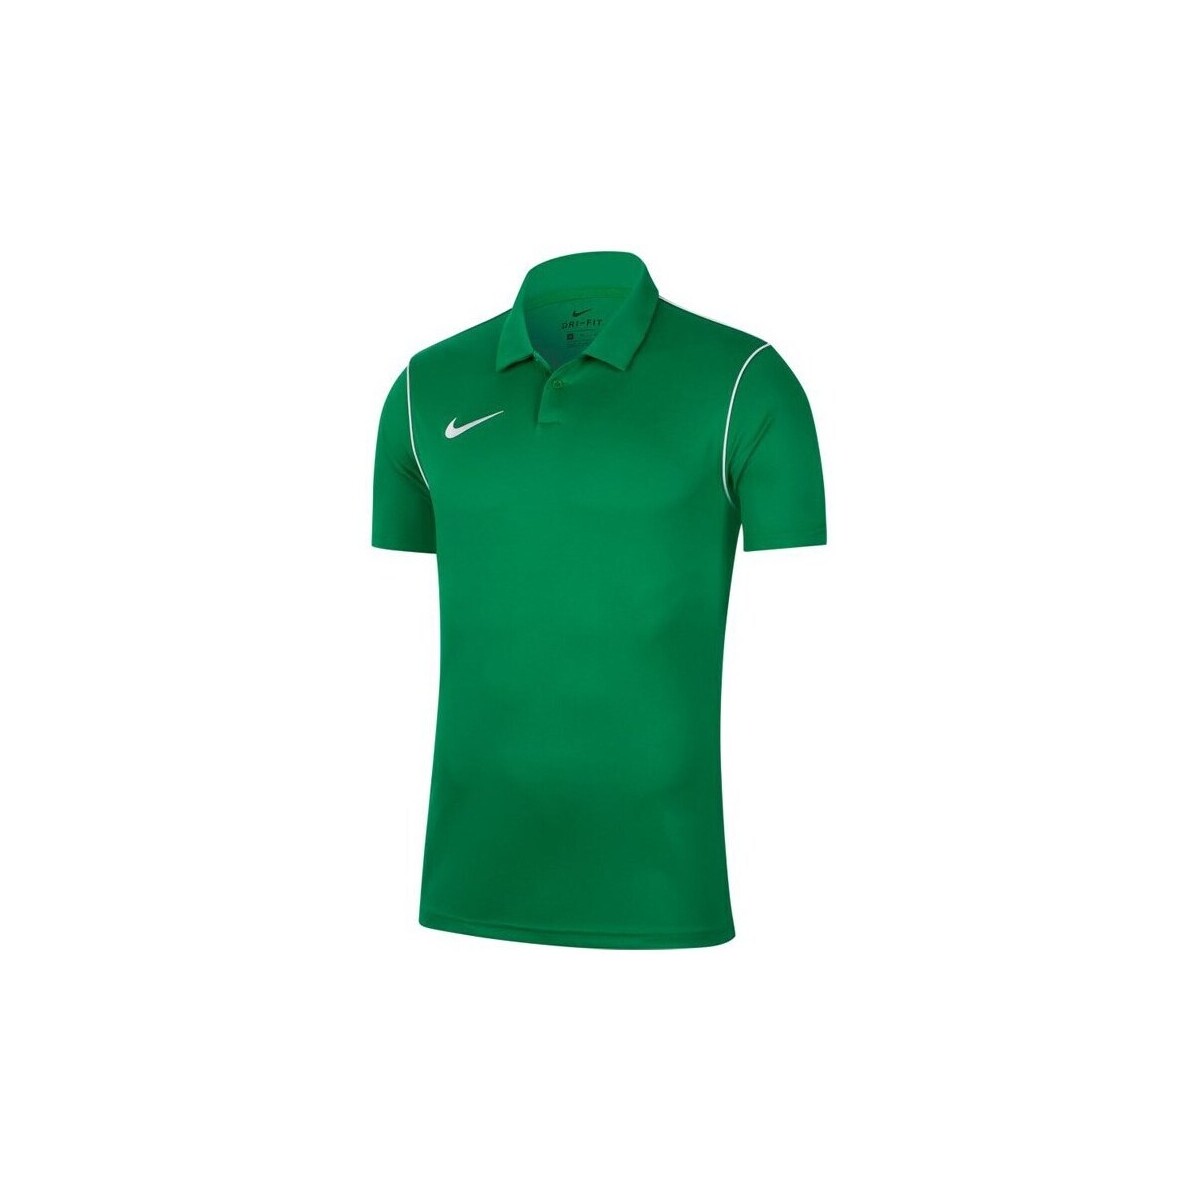 Îmbracaminte Băieți Tricouri mânecă scurtă Nike JR Dry Park 20 verde